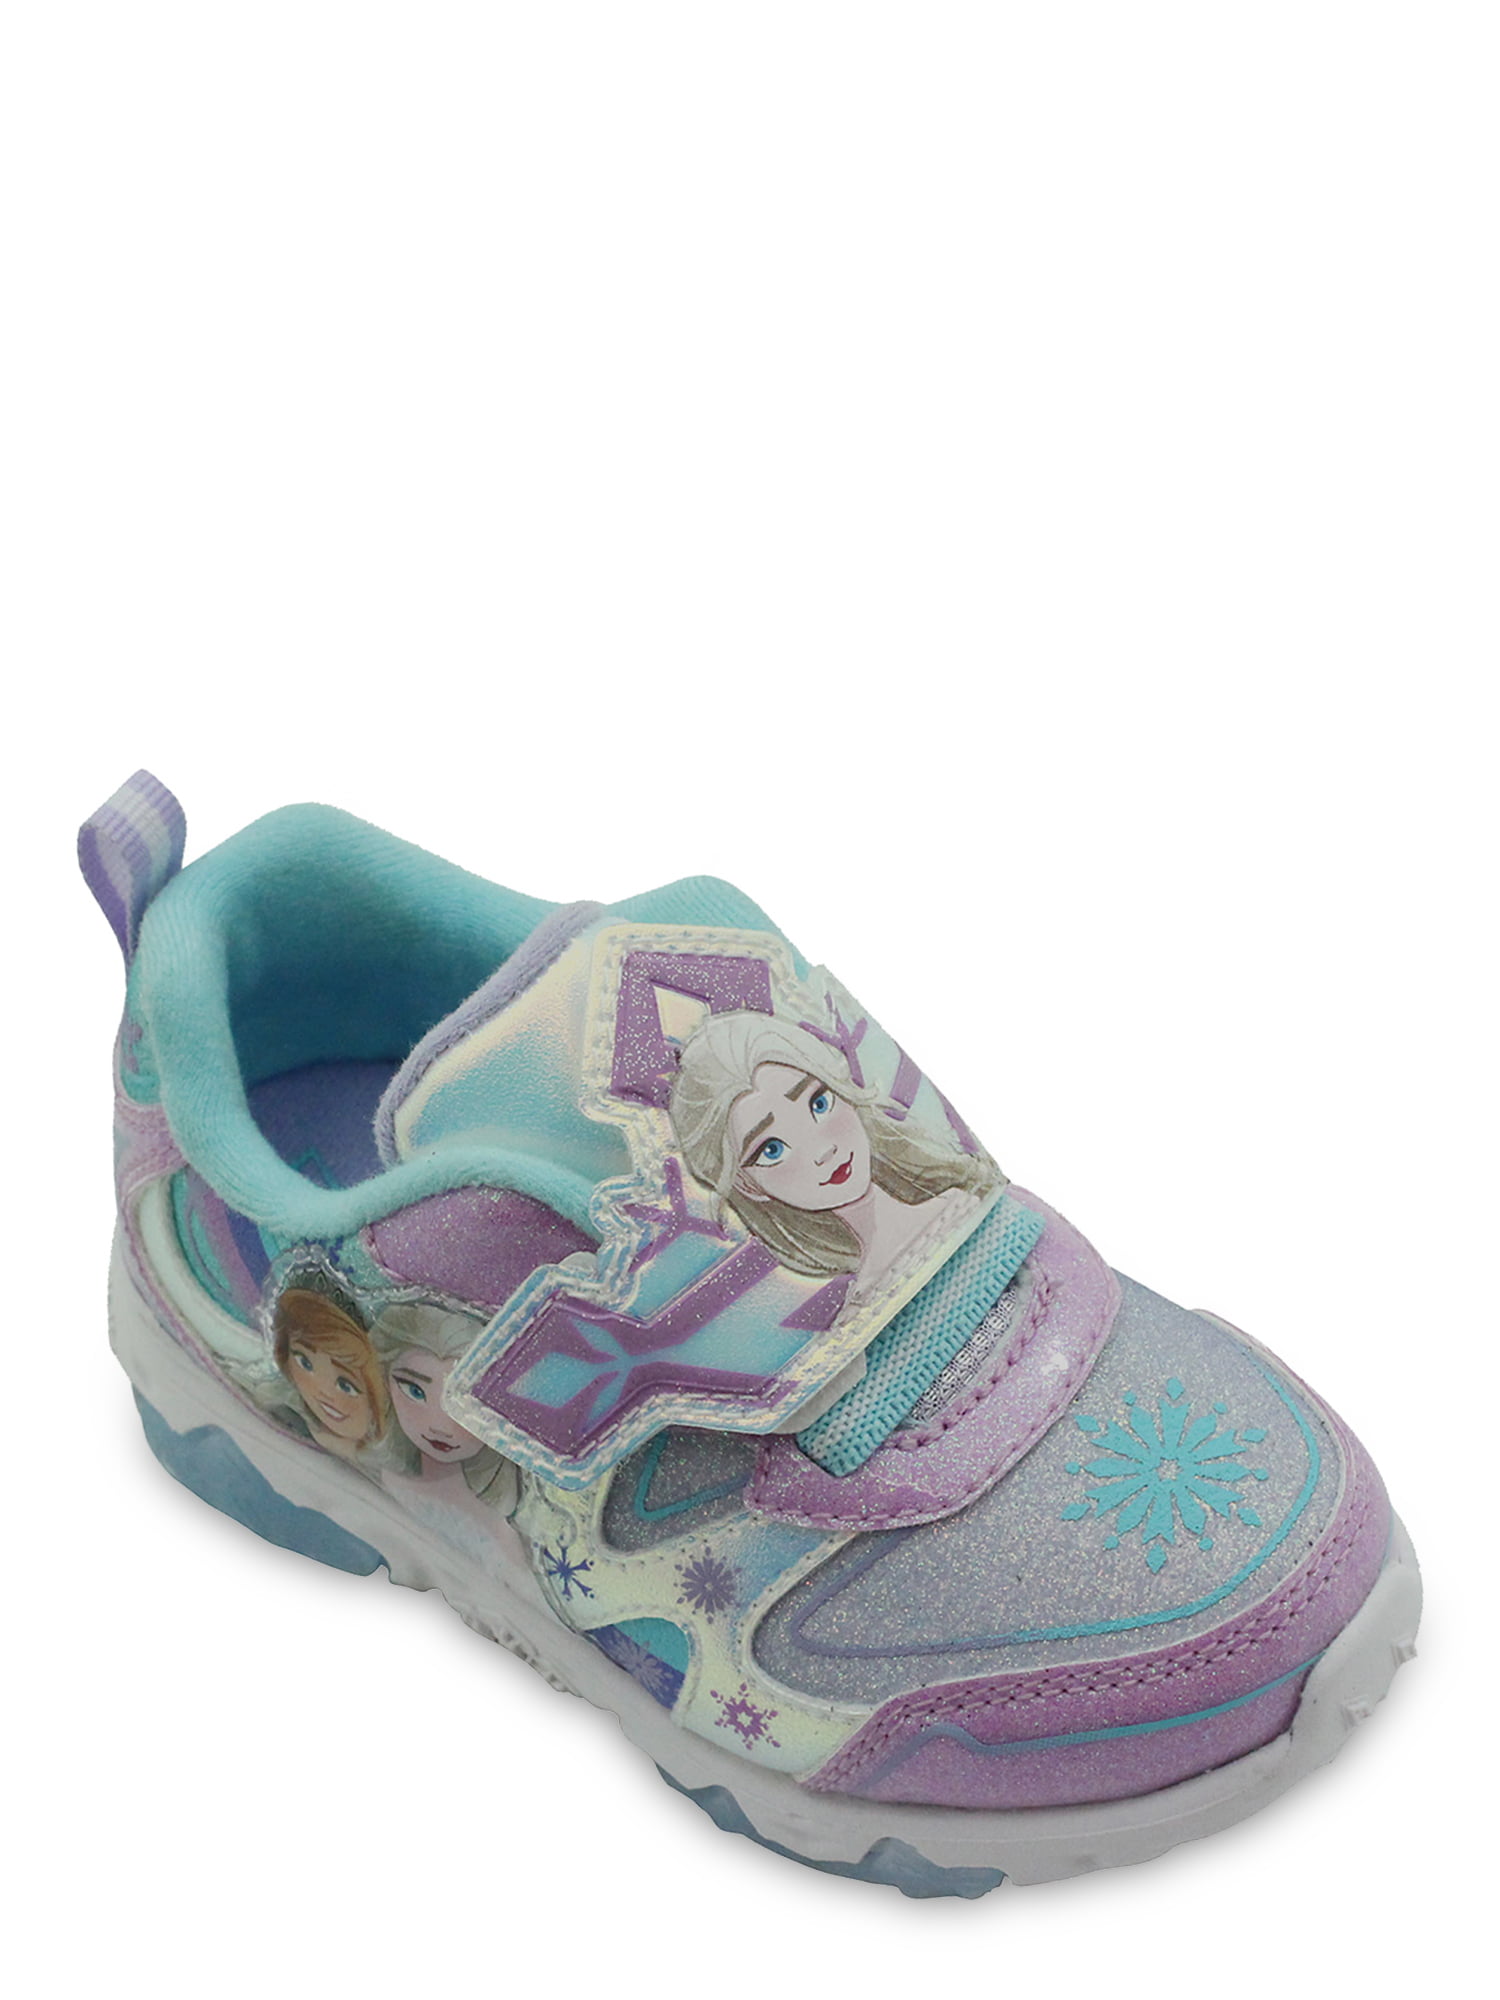 Elsa Frozen Princess Queen Running shoes for Girls